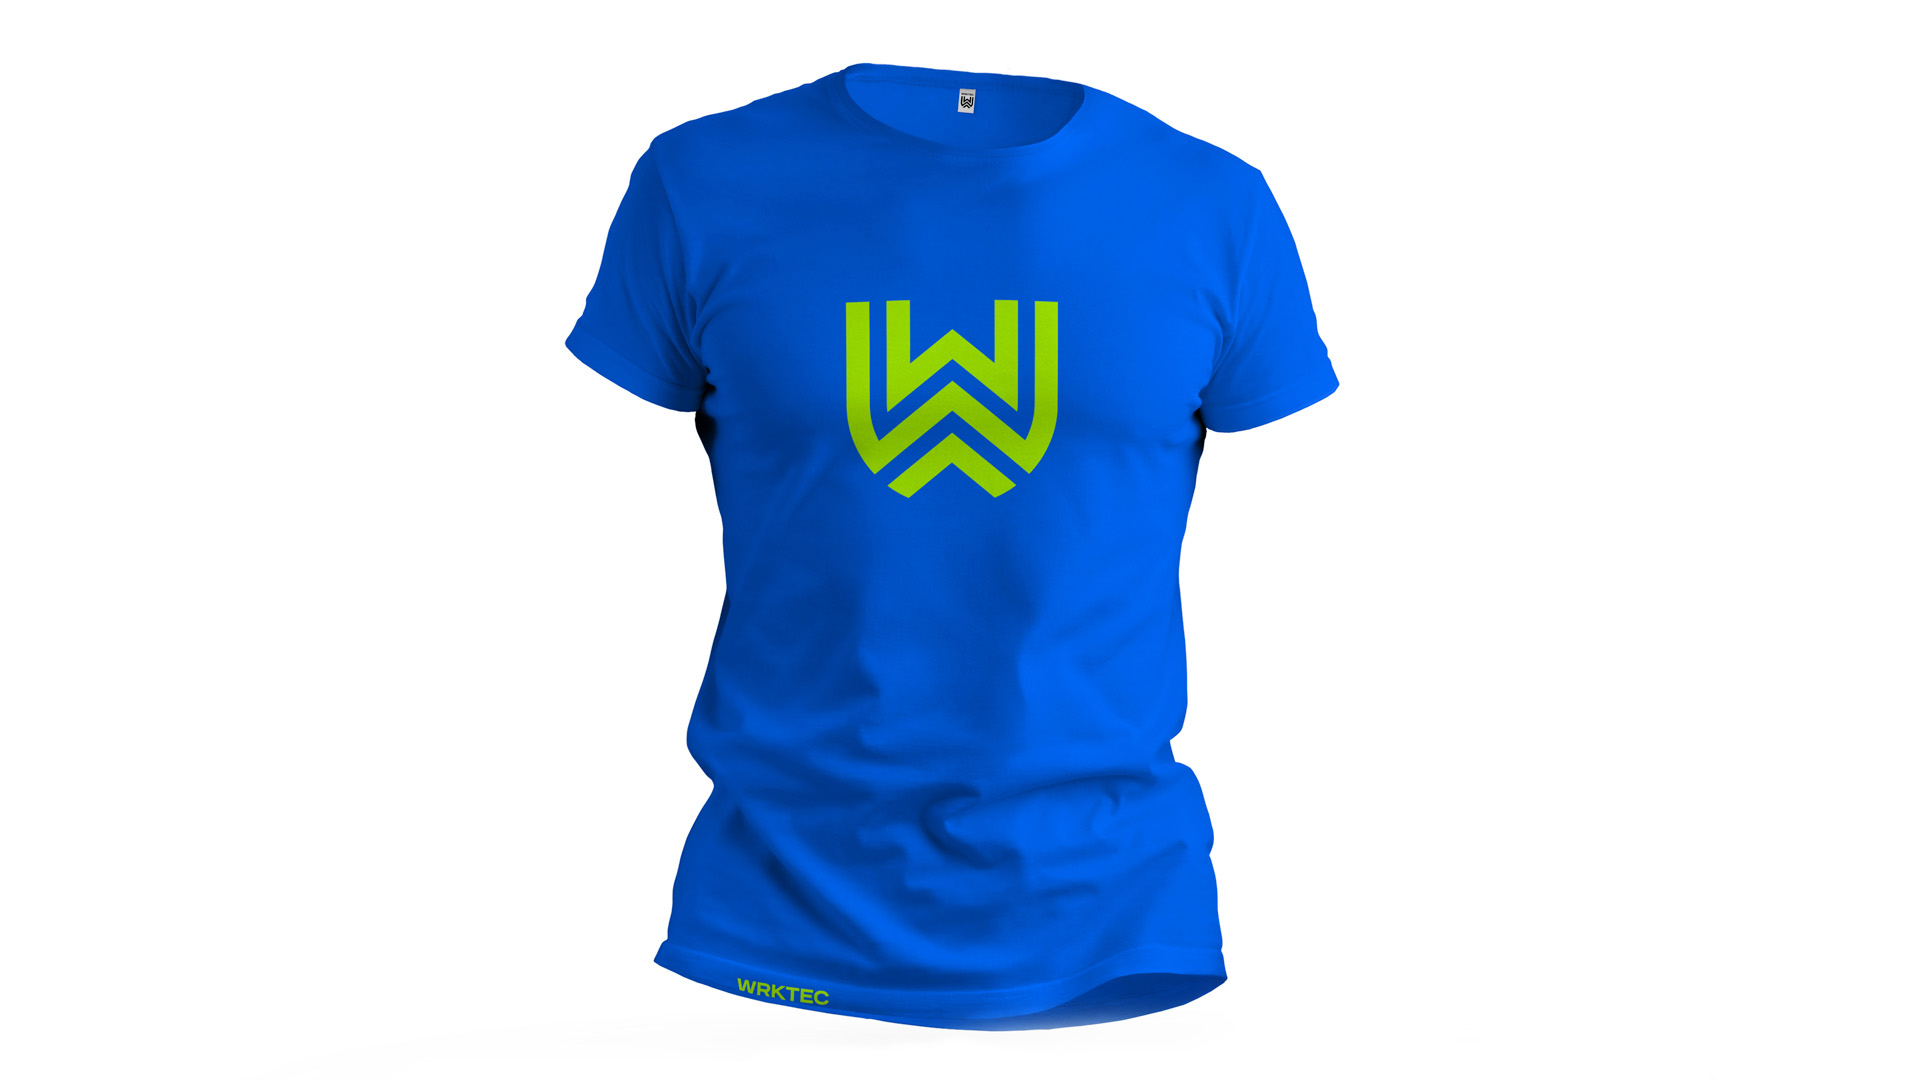 Robertstown-Wrktec-T-Shirt-1